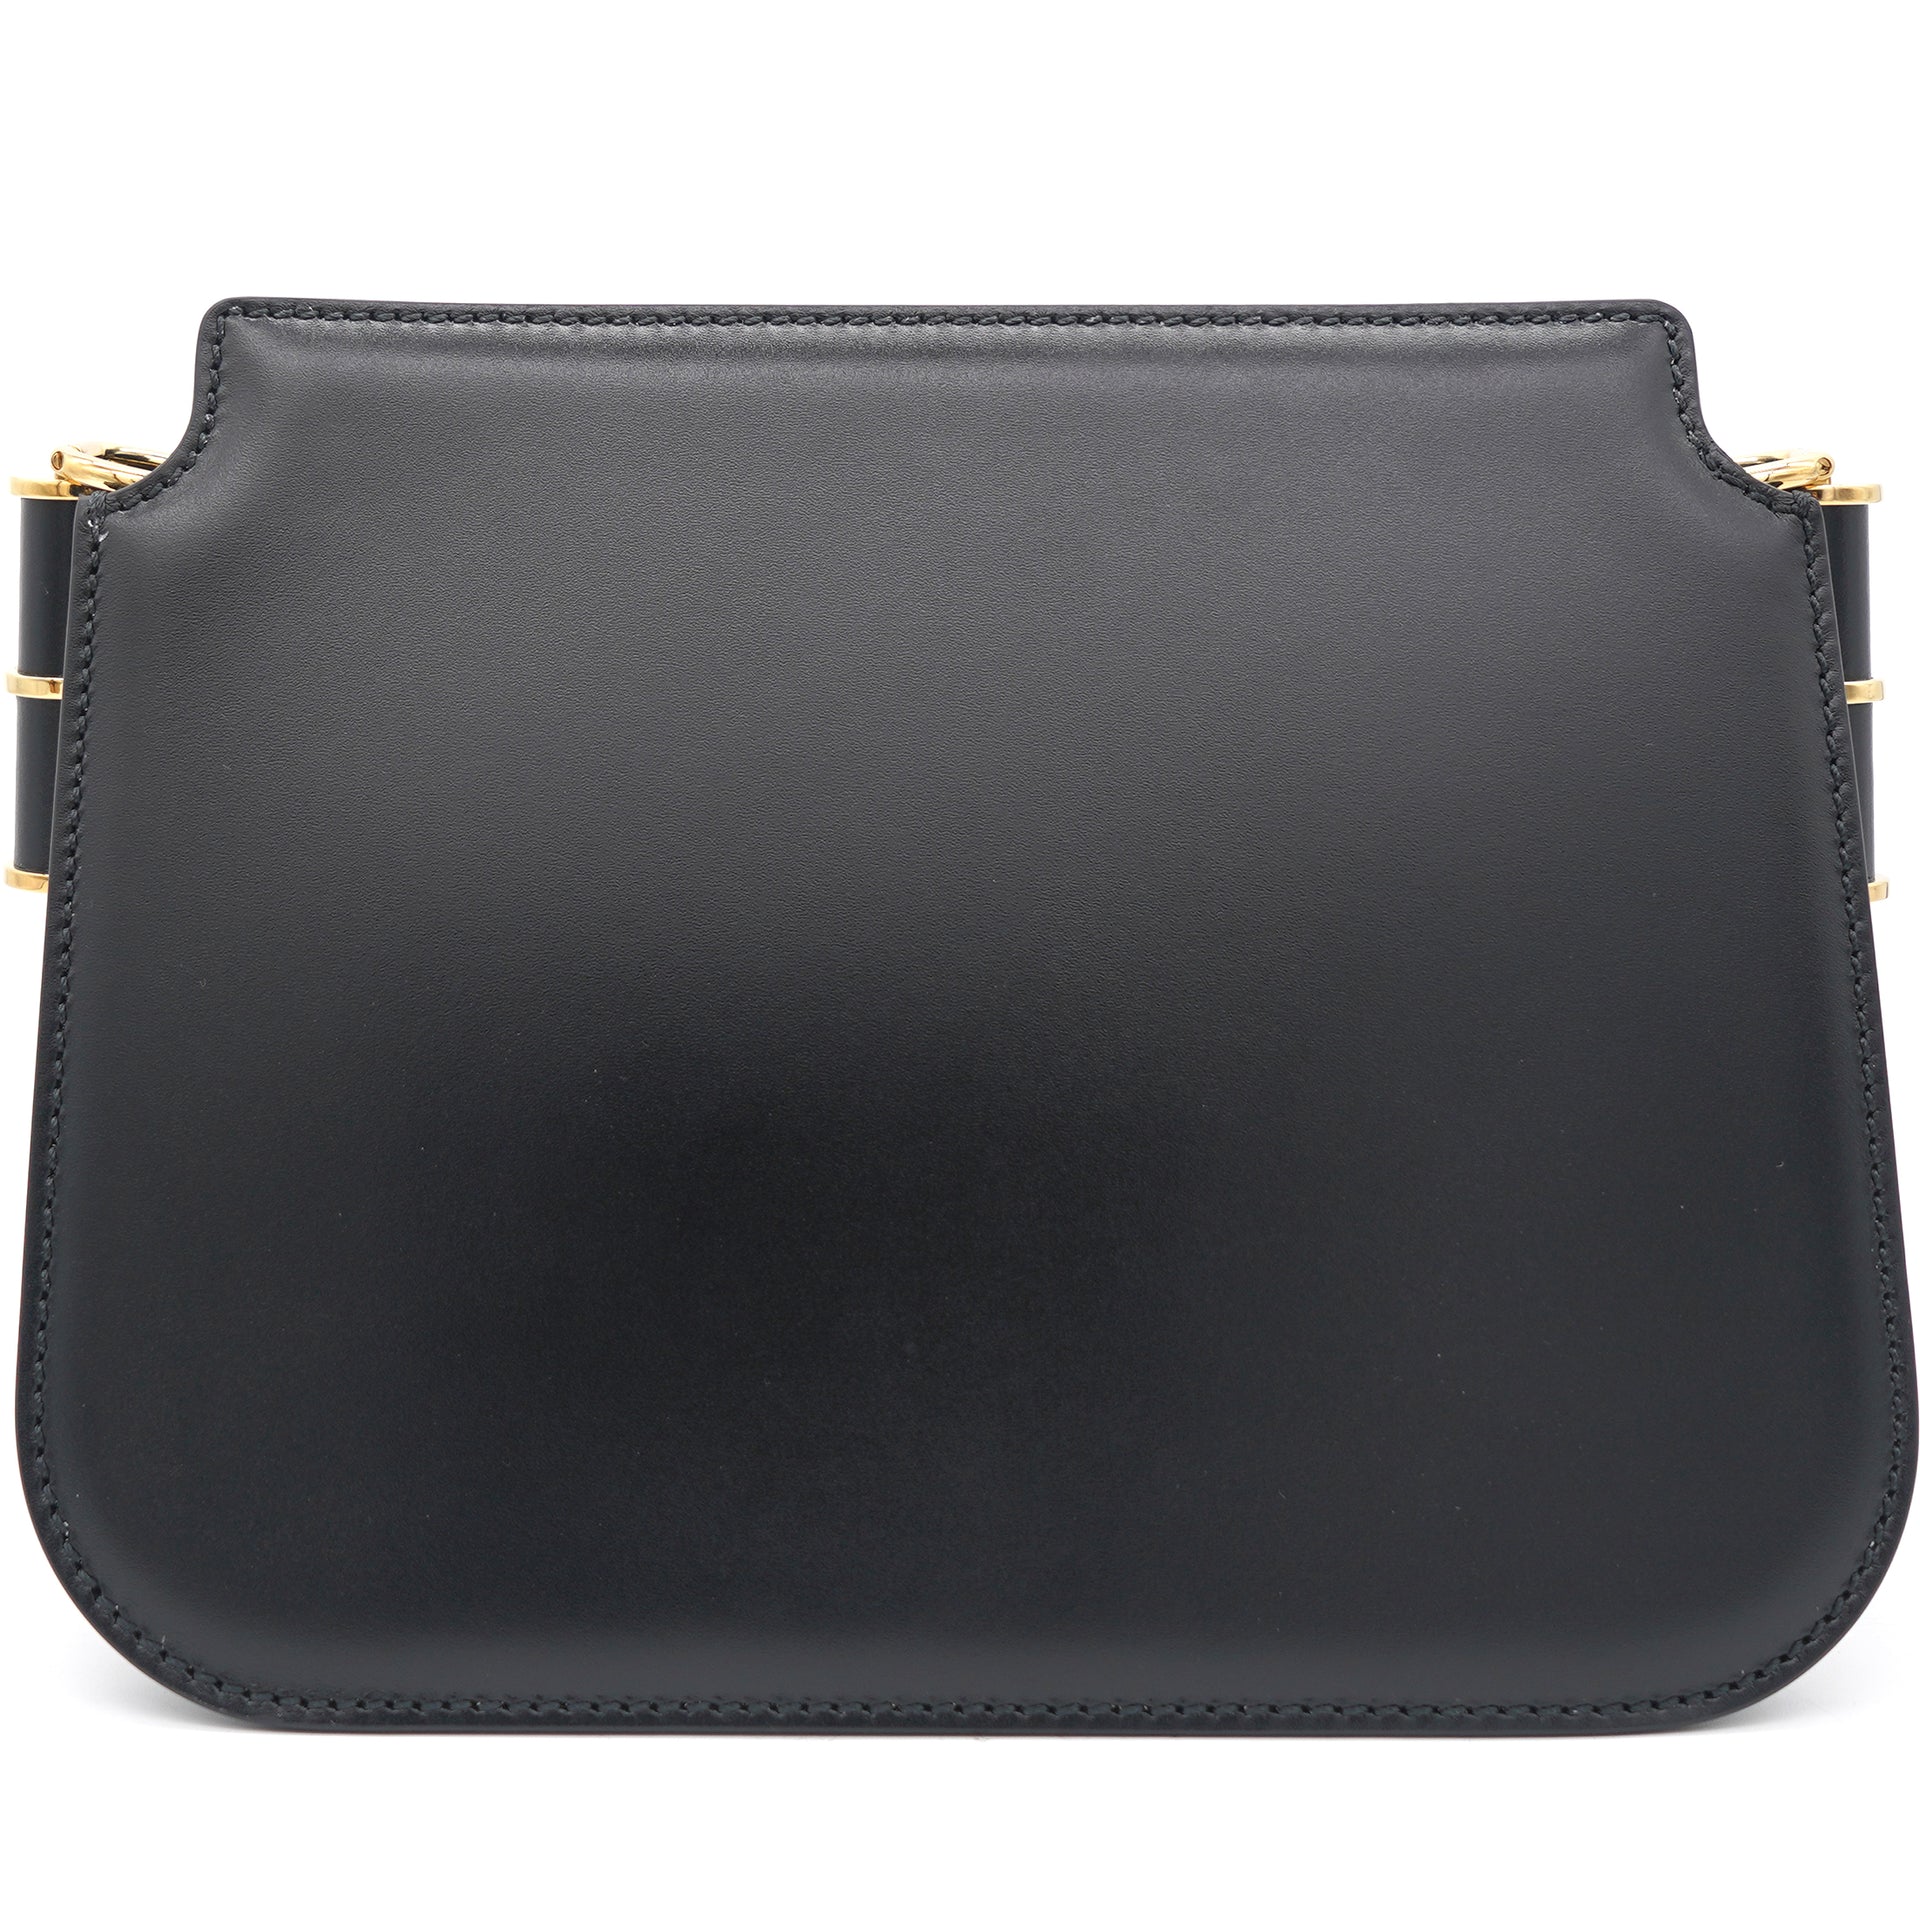 Fendi Black Kan I shoulder bag with Fendi Black Logo detail leather bag  strap | Bags, Black shoulder bag, Shoulder bag